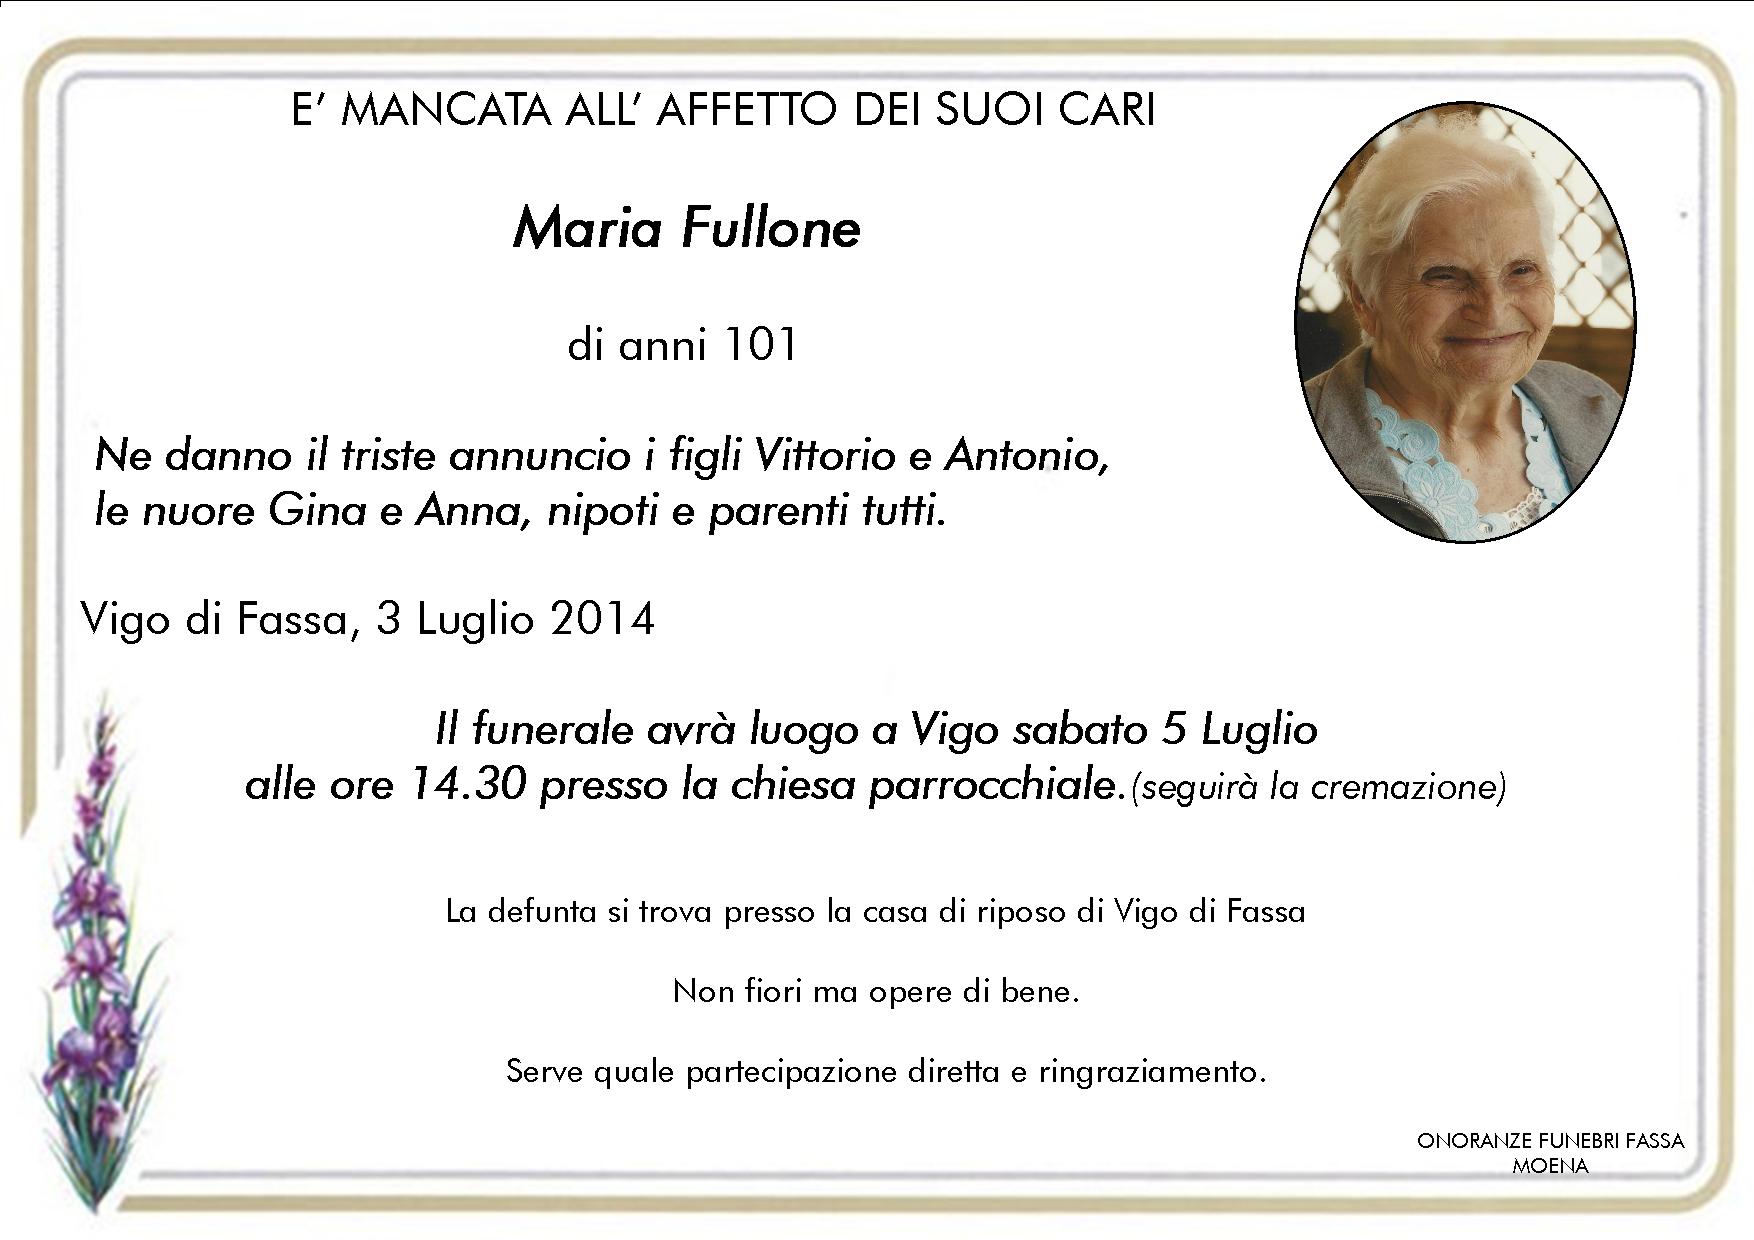 Maria Fullone